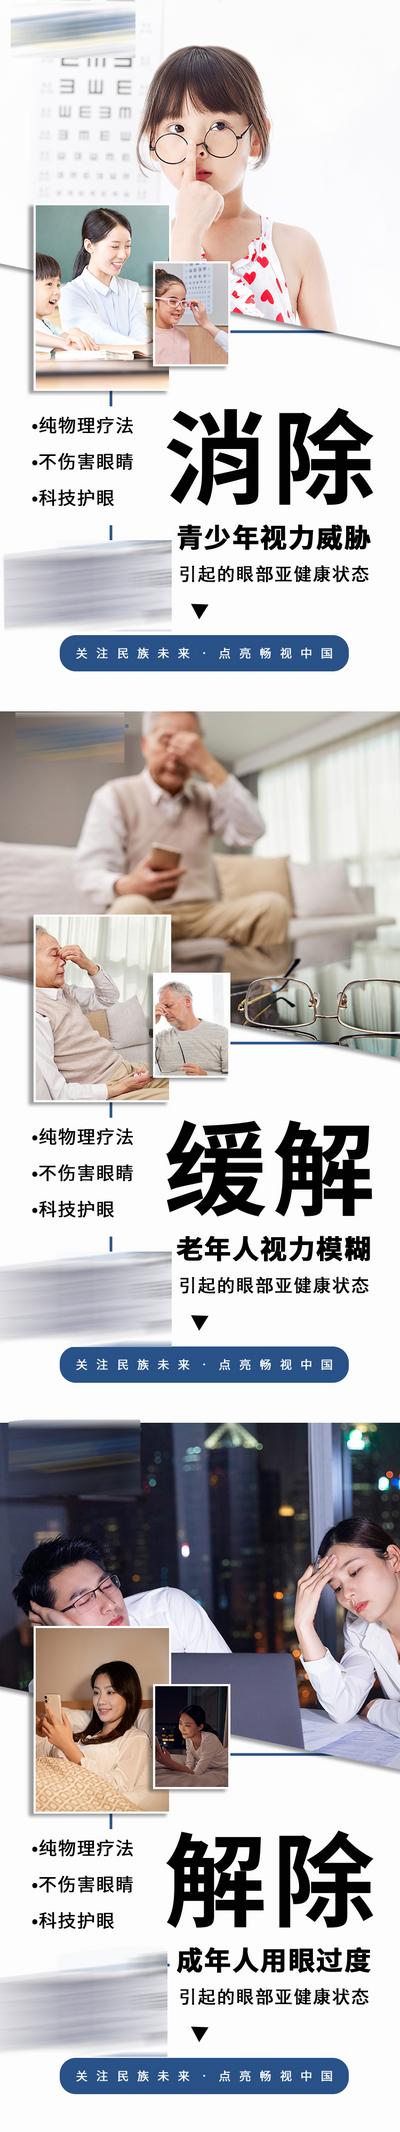 南门网 广告 海报 新零售 眼睛 视力 宣传 微商 防控 护眼 大健康 保健 系列